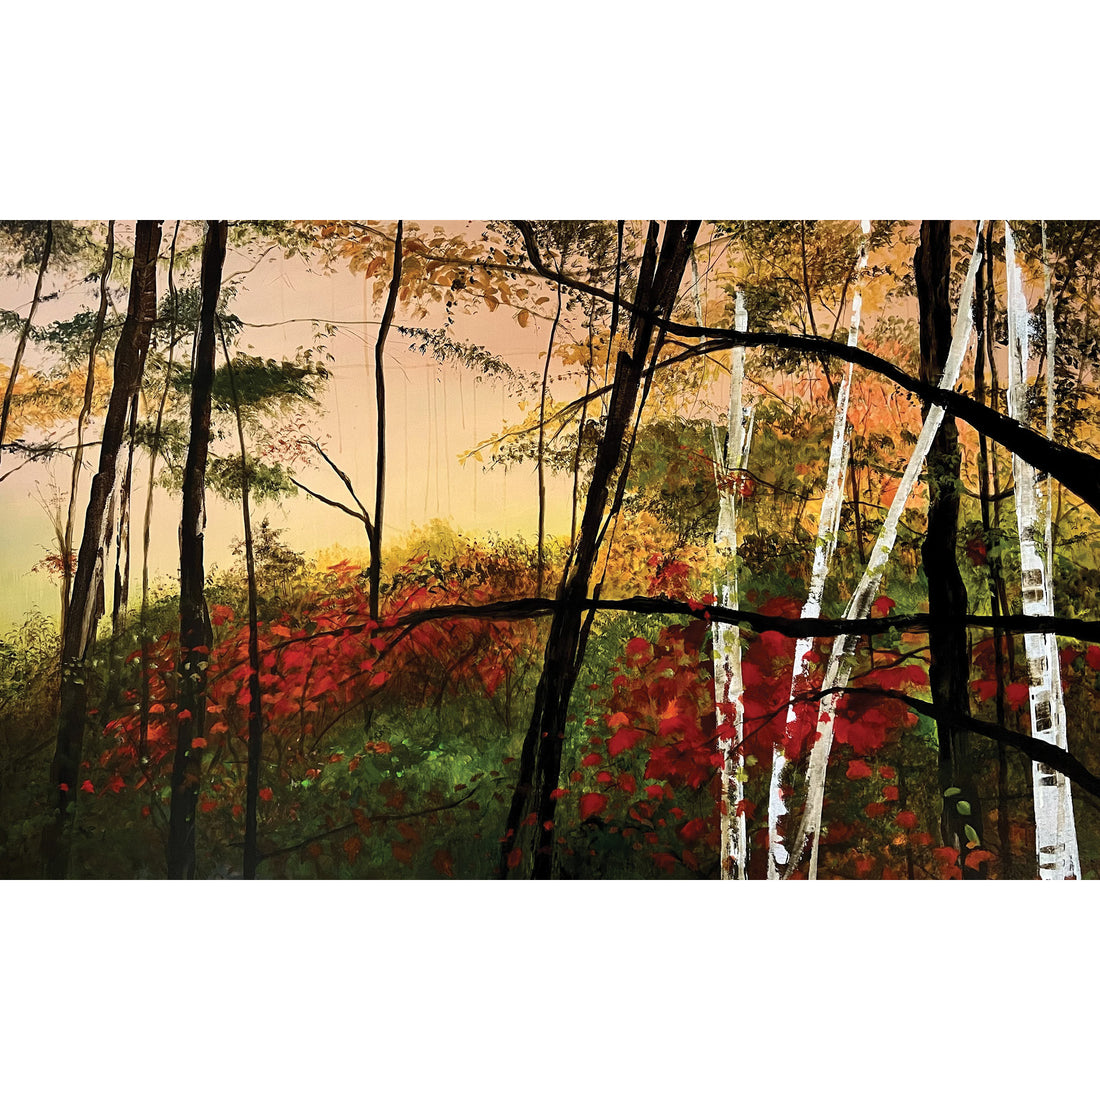 Melanie Lefebvre "Autumn" landscape painting Canadian artist